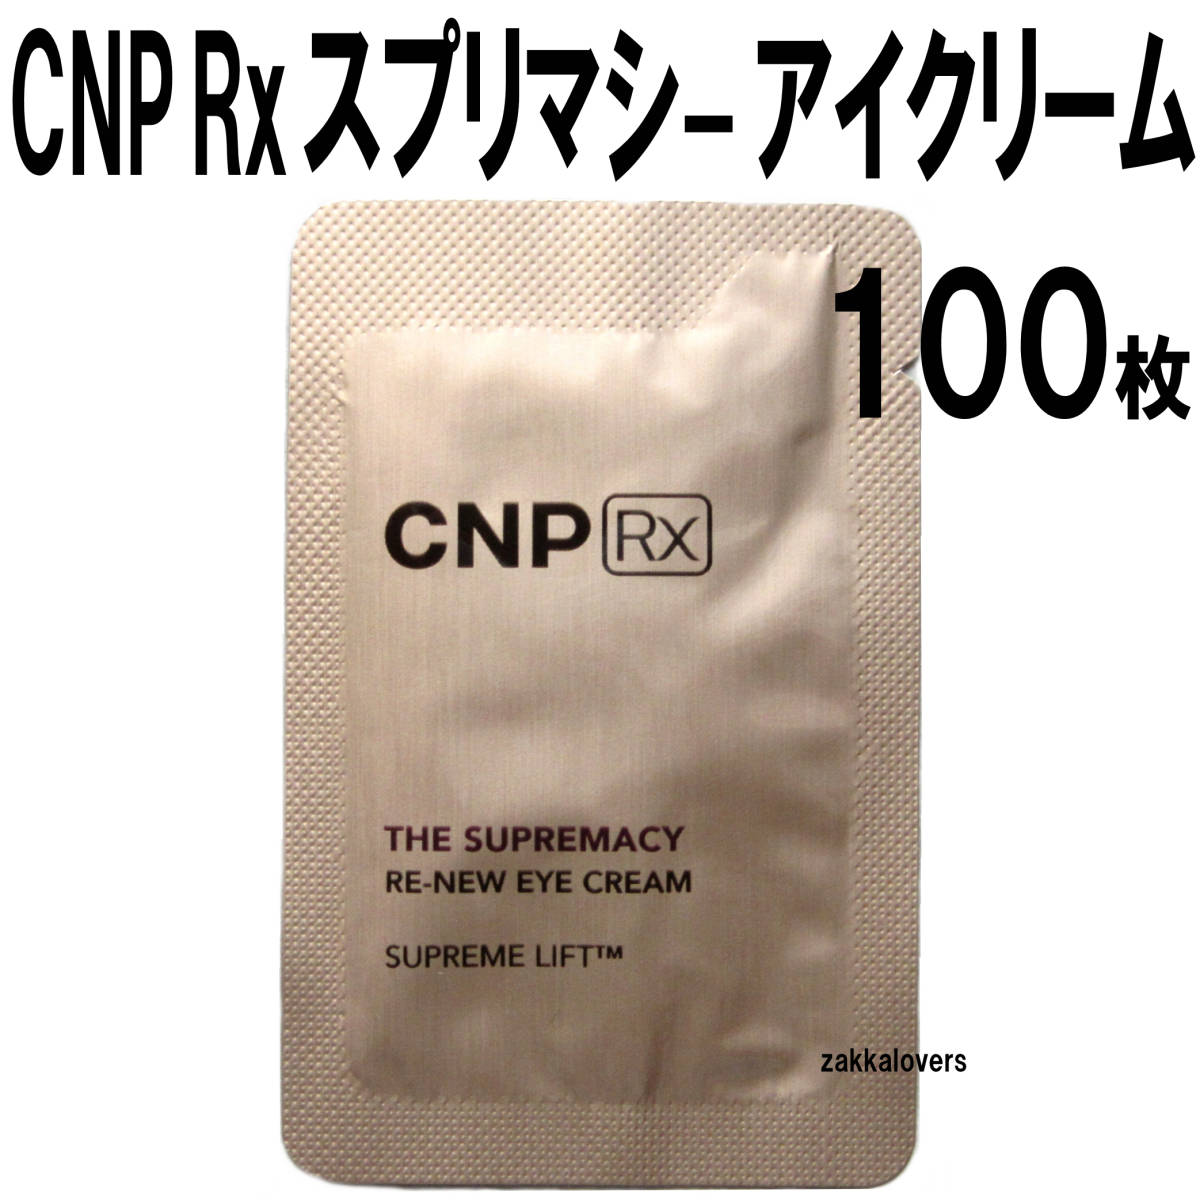 100 листов CNP Rx The *s Prima si-li новый I крем 80000 иен соответствует - li эластичность помятость прекрасный белый anti старение коричневый and Park RX Корея cosme 